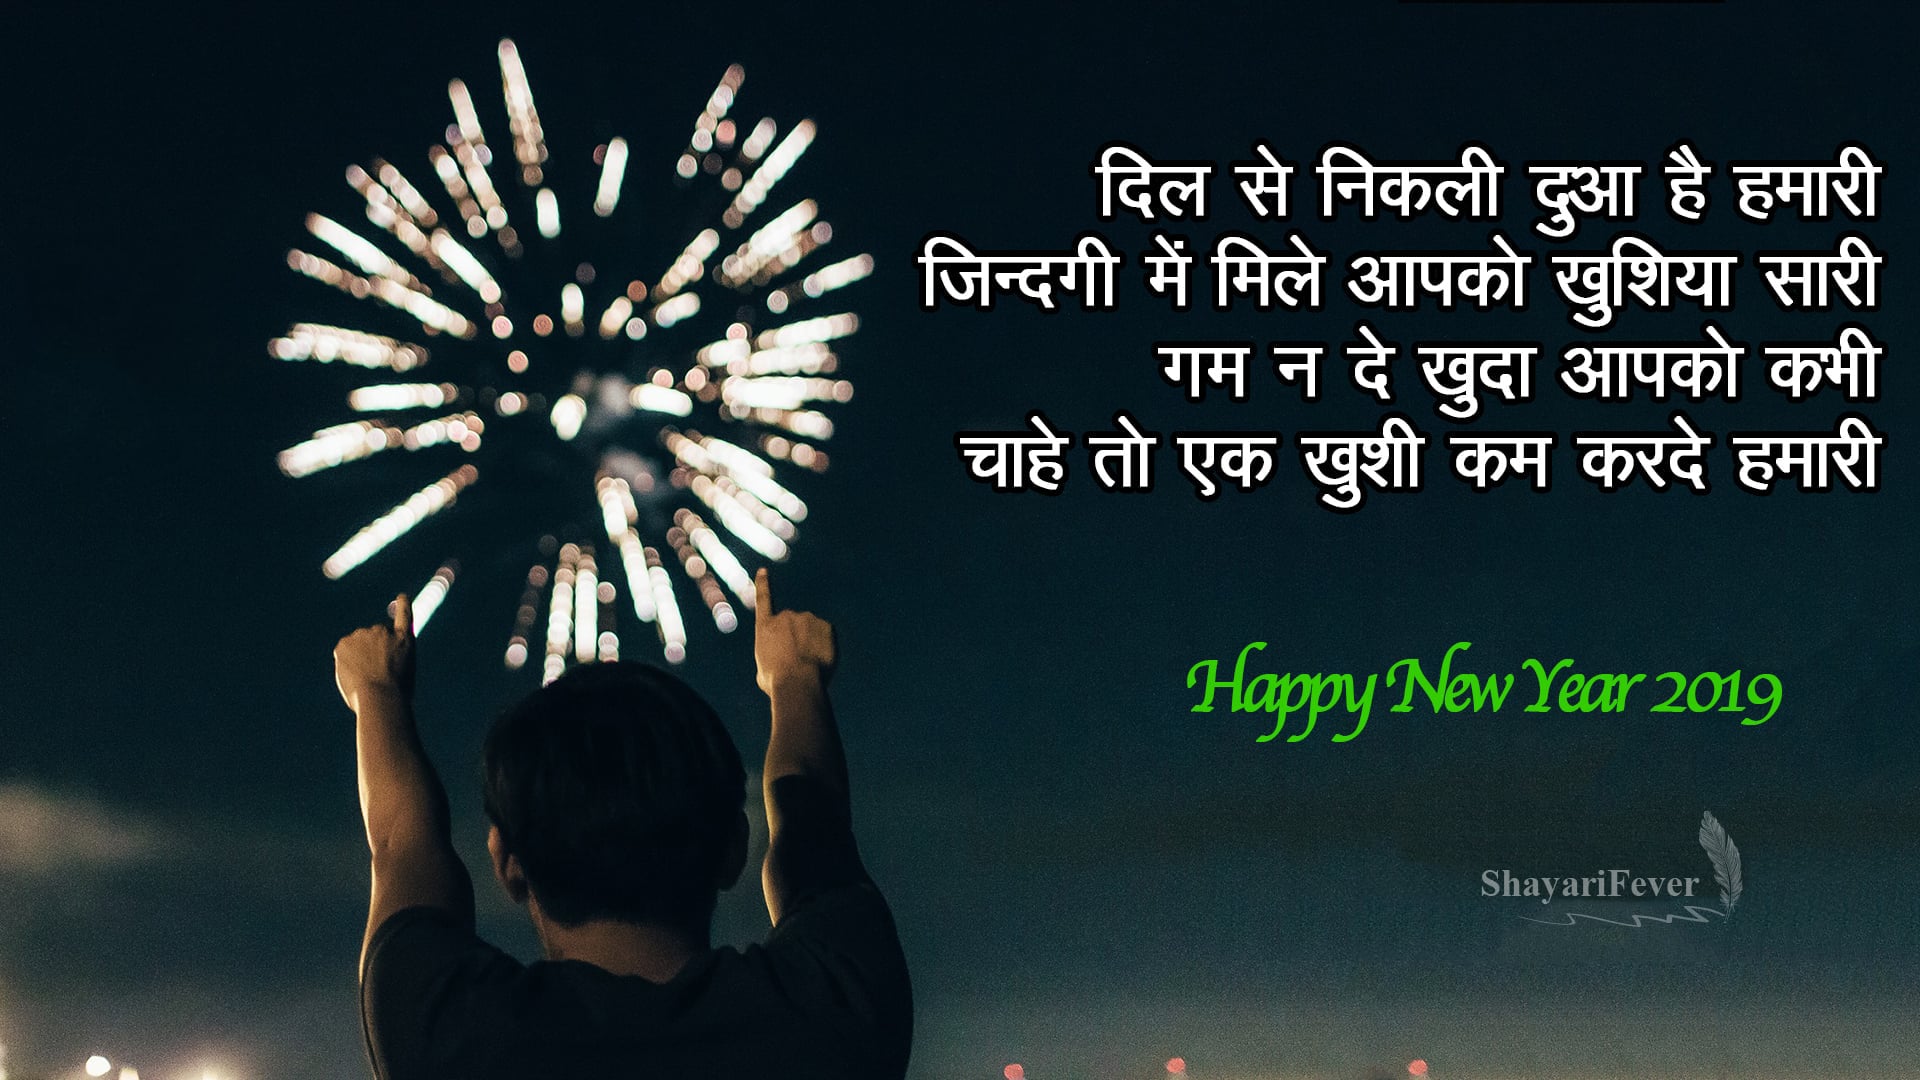 Happy New Year Hindi Shayari 2019 - नए साल की शायरी हिन्दी में